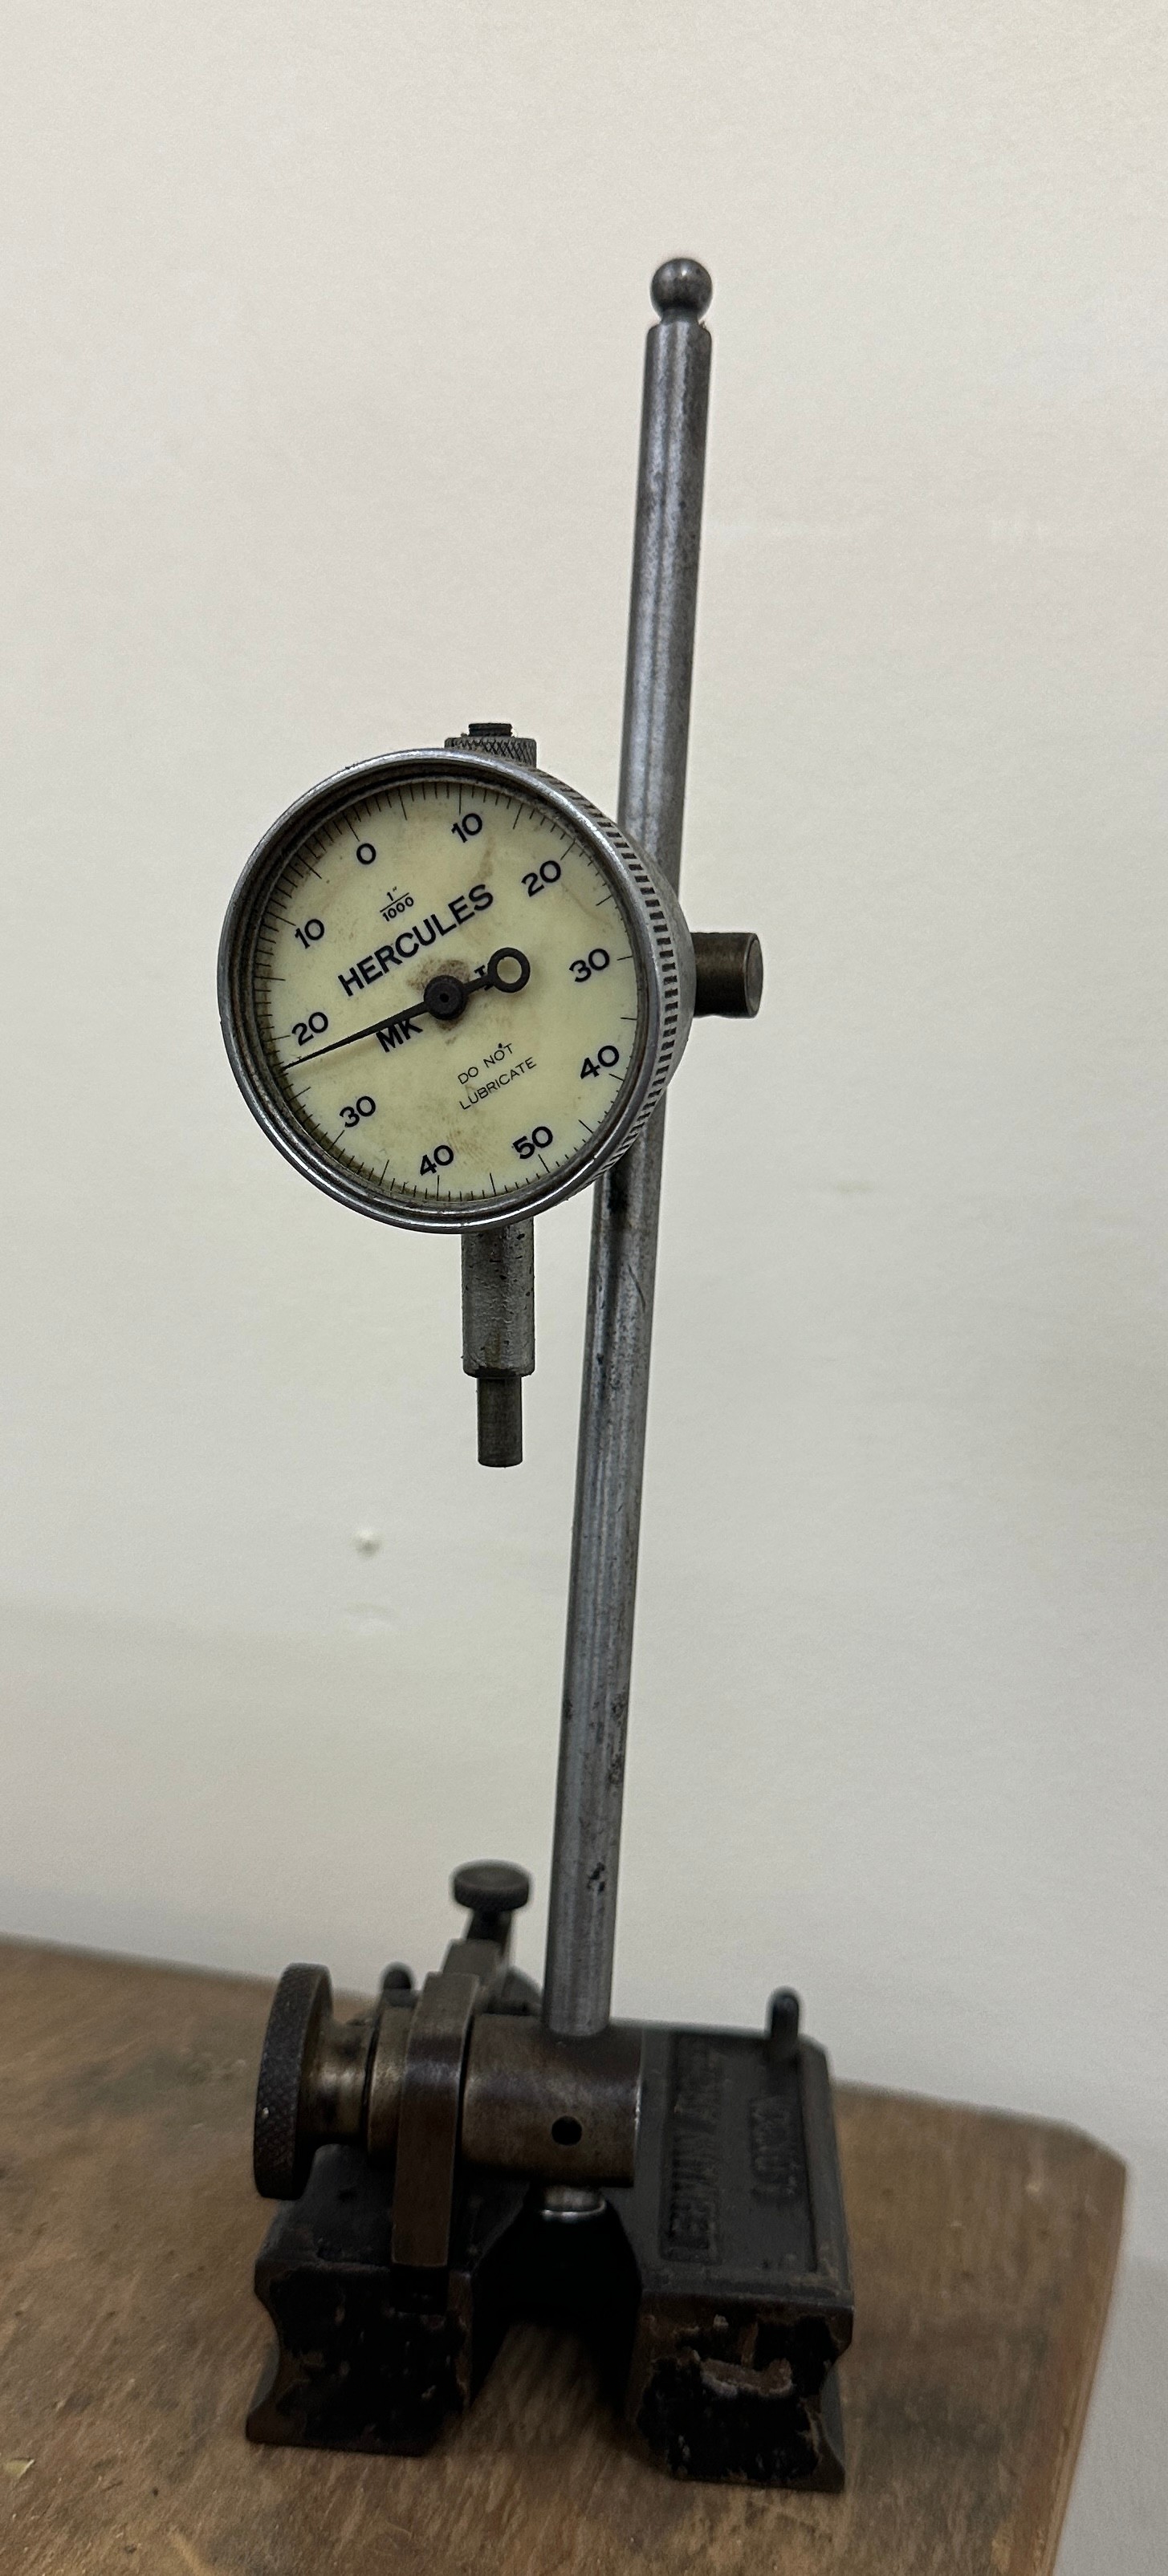 Engineer hercules dial gauge - Image 2 of 5